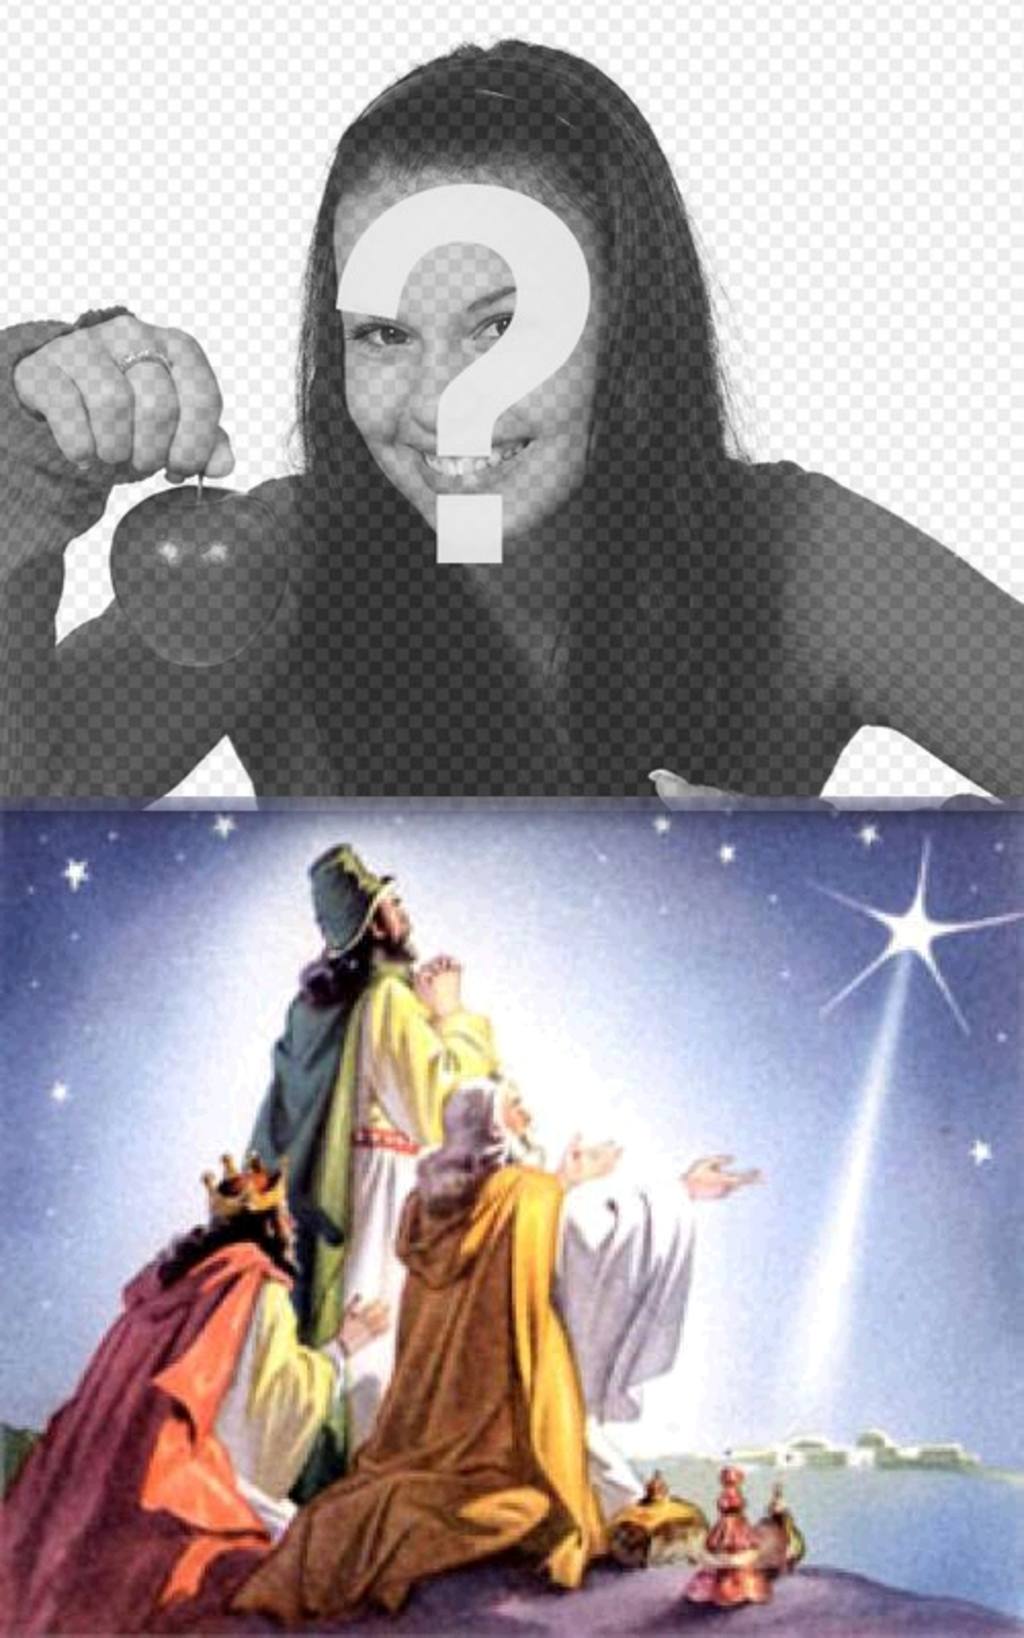 Cartão de Natal dos três reis magos do Oriente, com suas ofertas próximas a Belém, seguindo a estrela que marcou os Jesús.Podemos criança colocar uma foto de nossa escolha. Felicita as férias com..